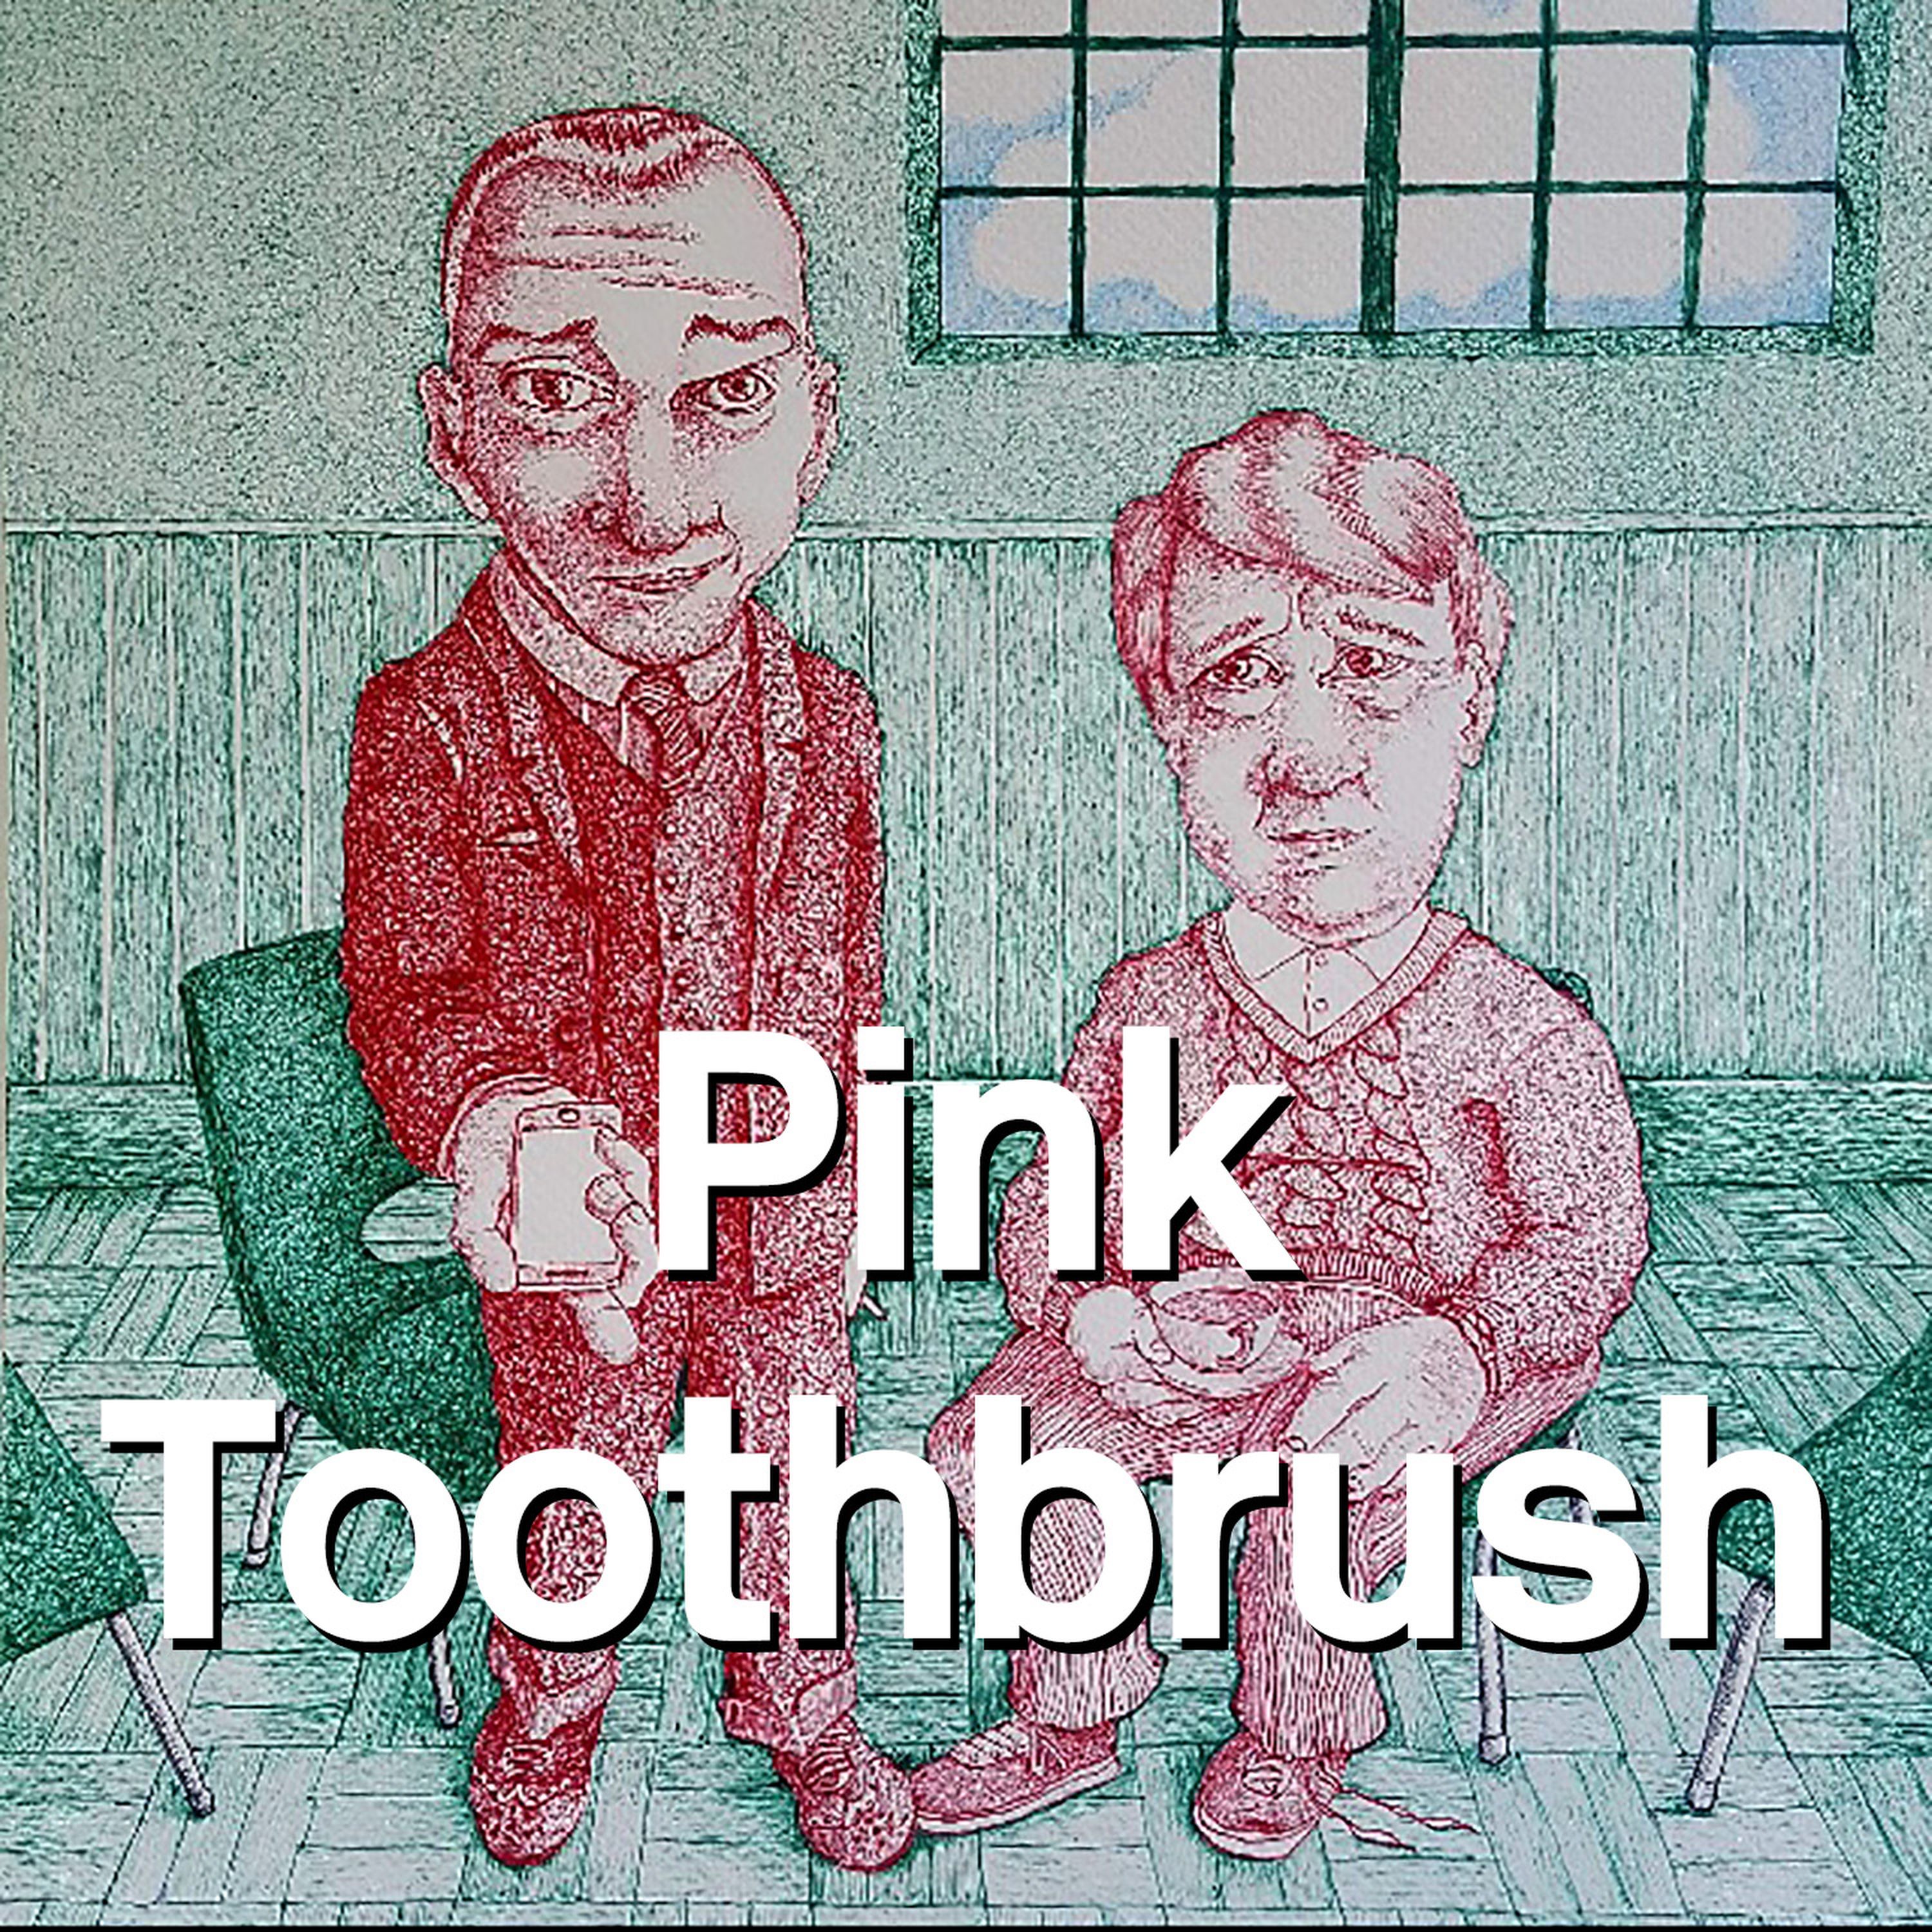 06: Pink Toothbrush